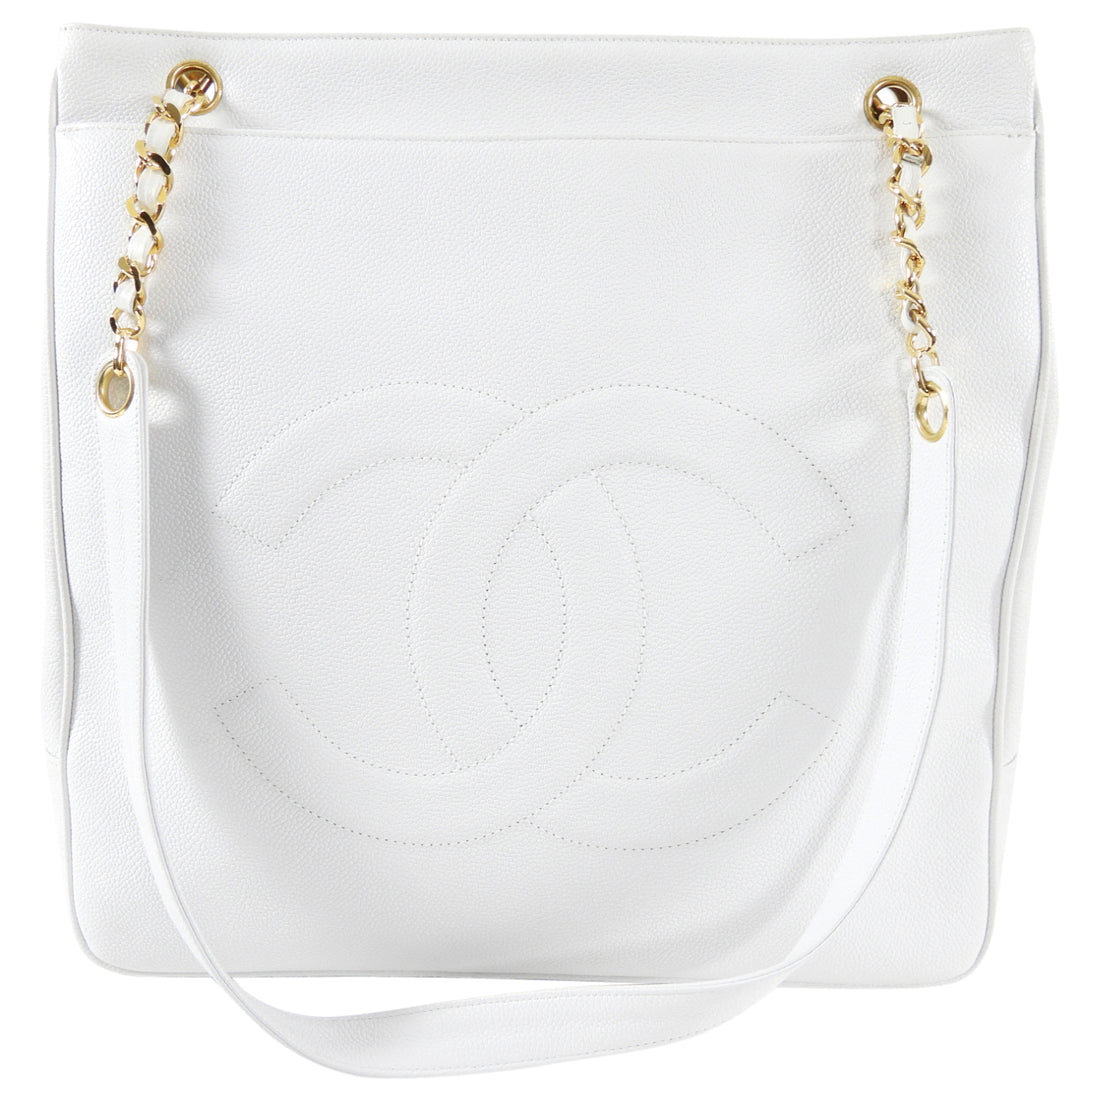 Chanel Hobo Bag White | 3D model